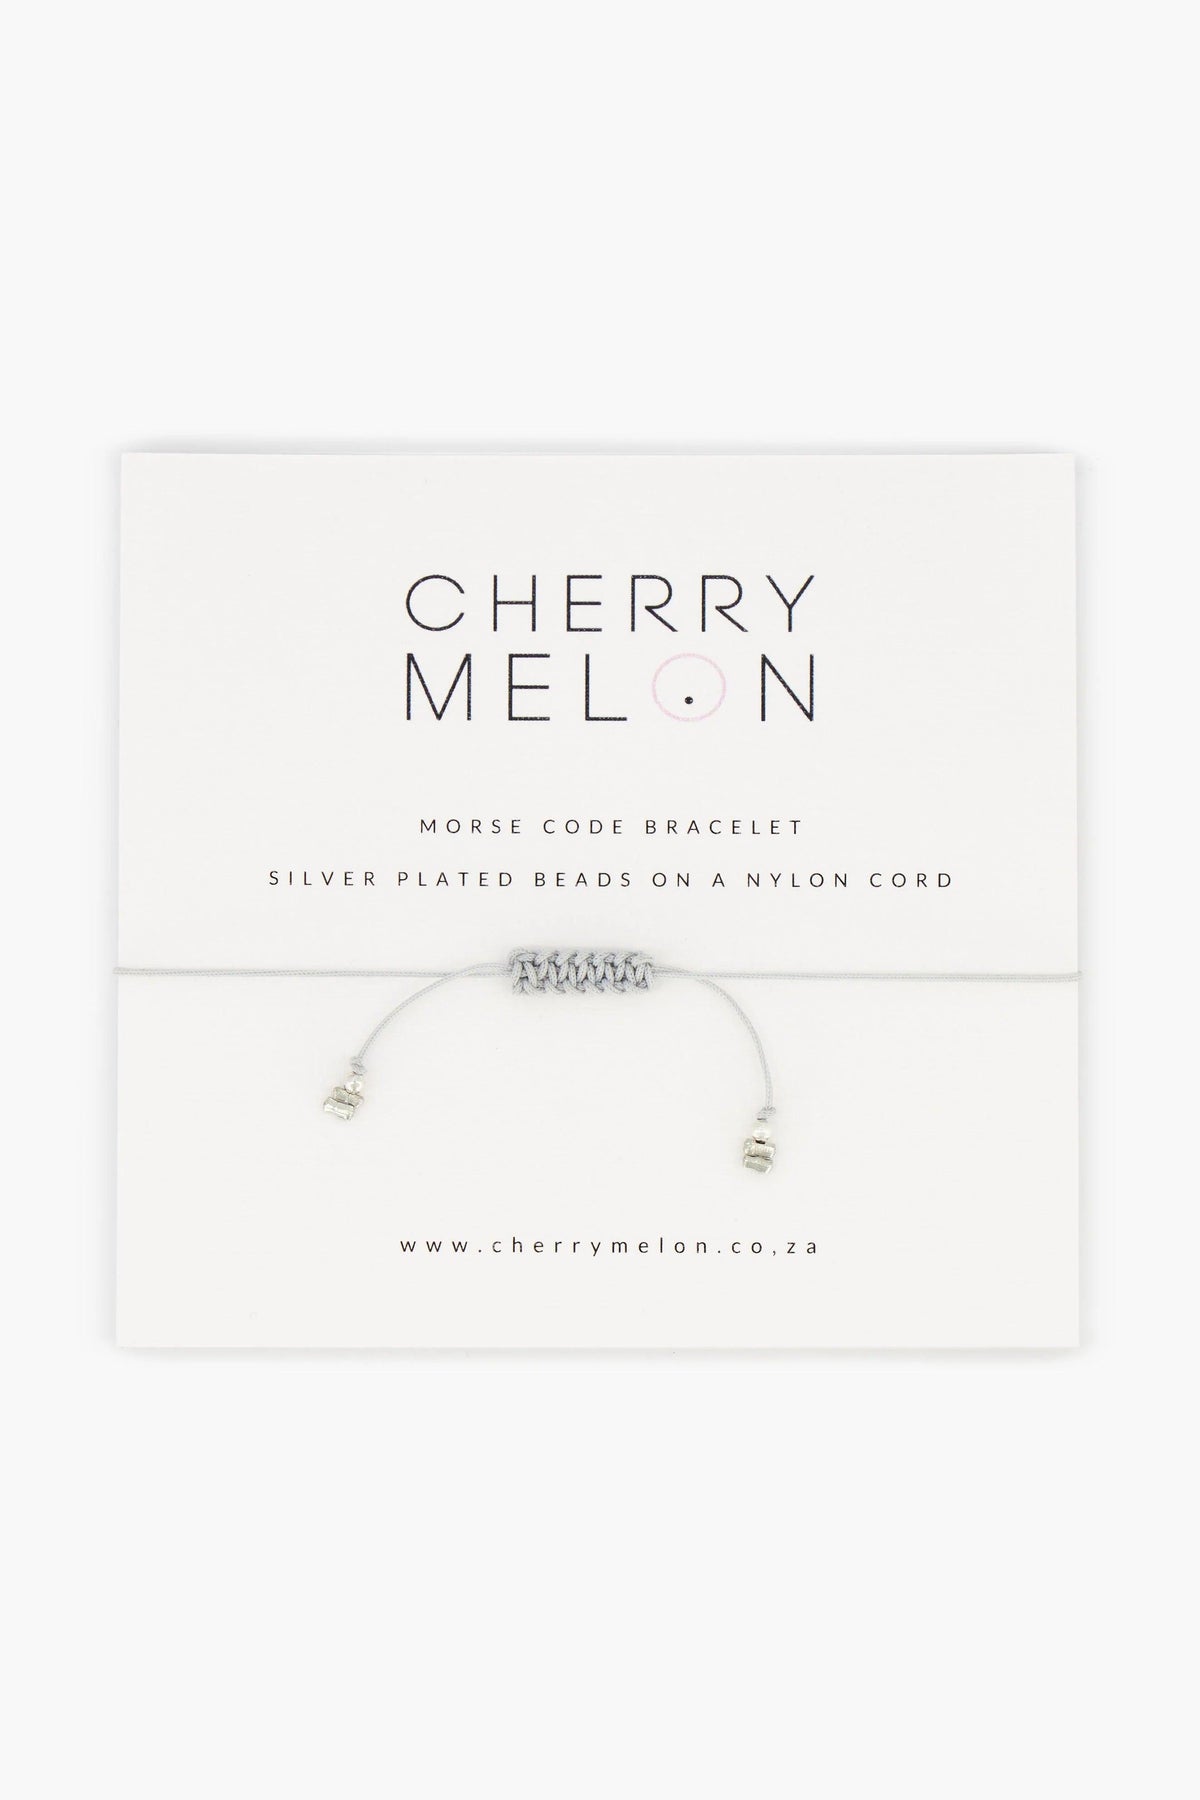 Morse Code Bracelet “Blessed” - Cherry Melon